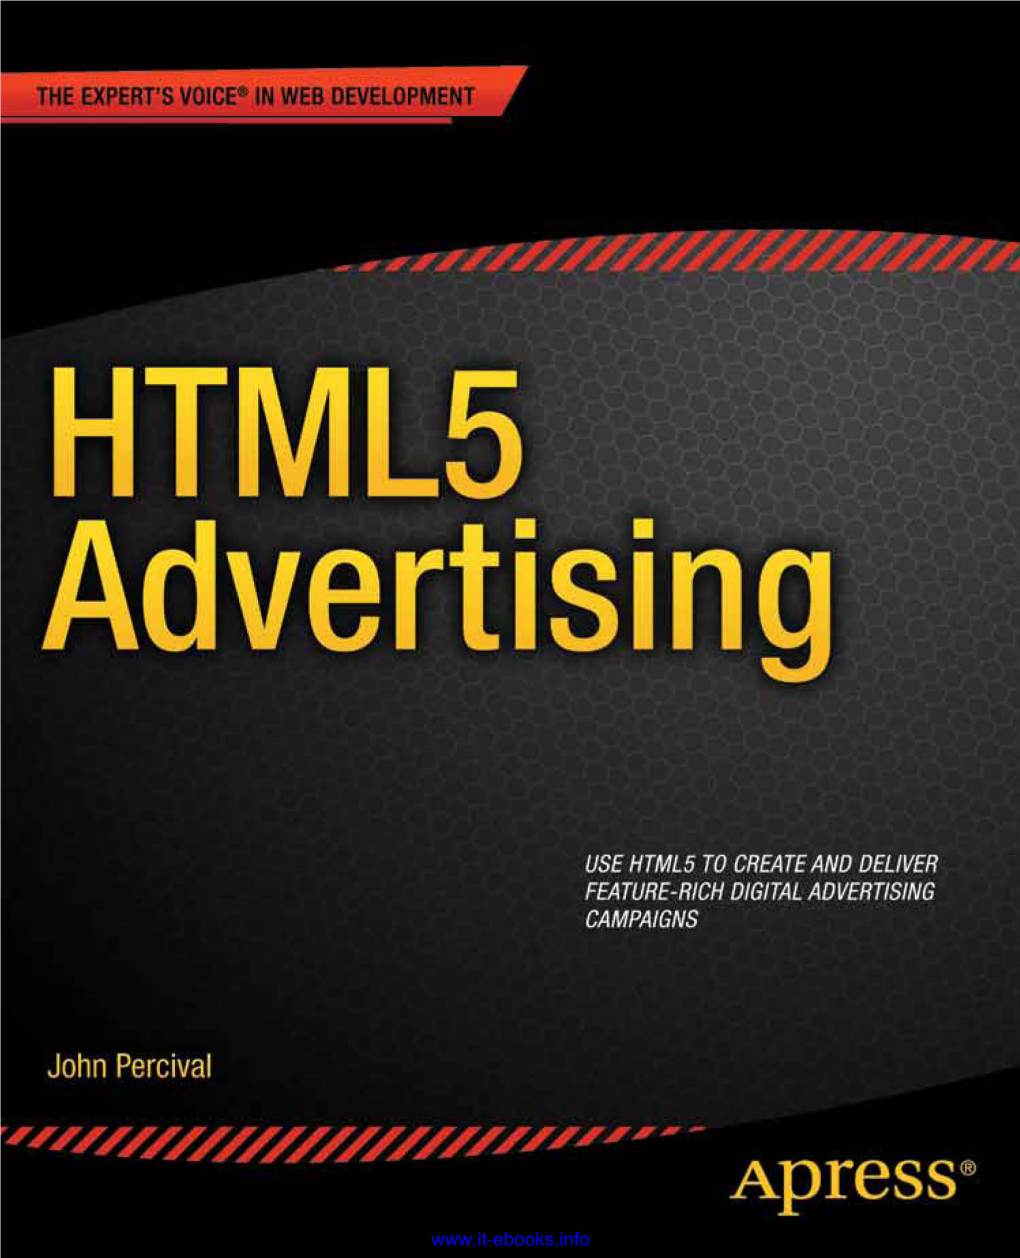 HTML5 Advertising Going Forward ������������������������������������������������������������325